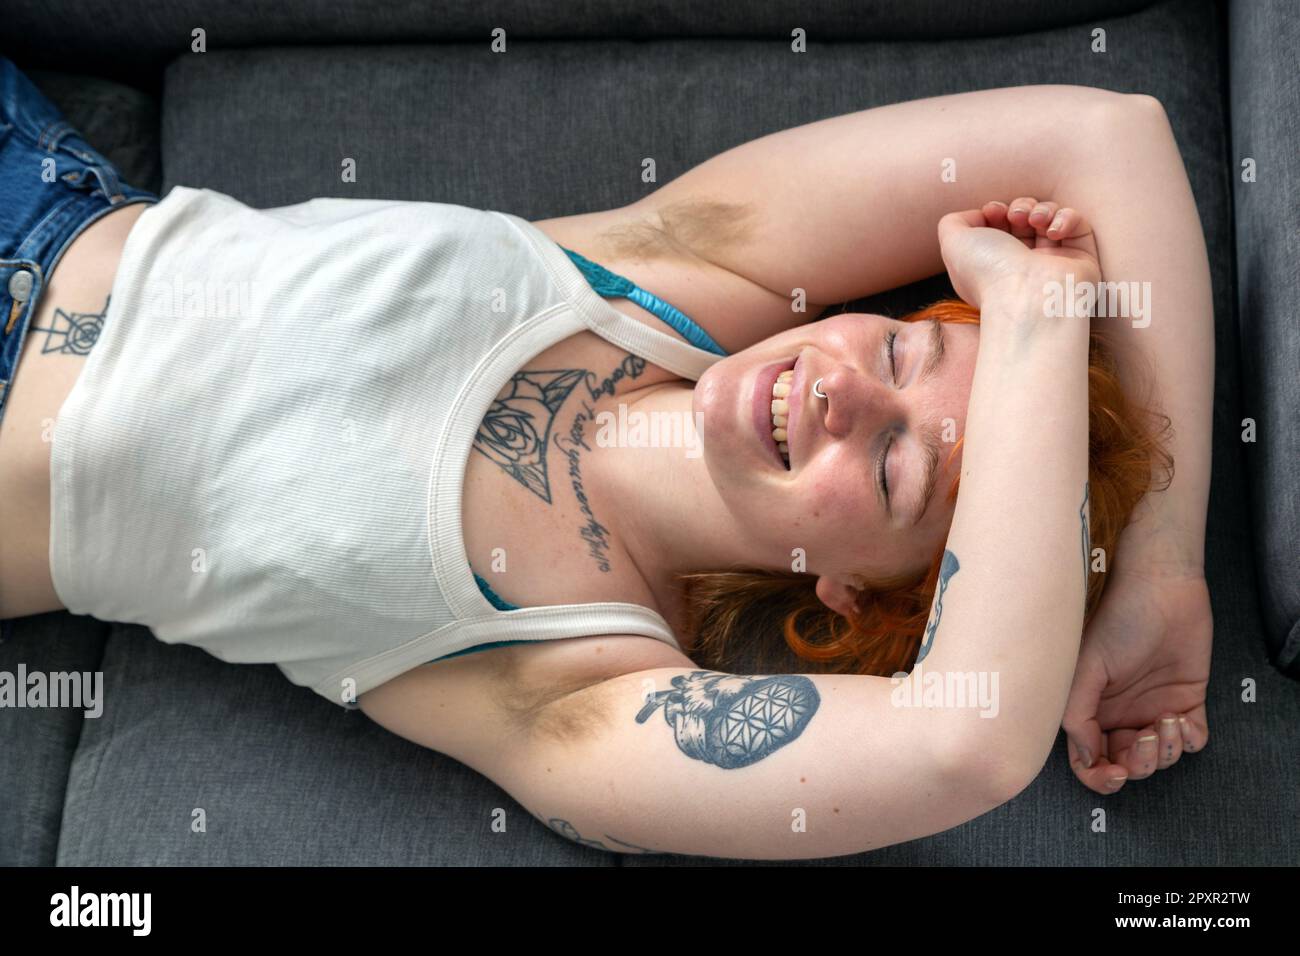 Eine Frau mit behaarten Achselhöhlen, die auf einem Sofa liegt, mit den Armen über dem Kopf. Stockfoto